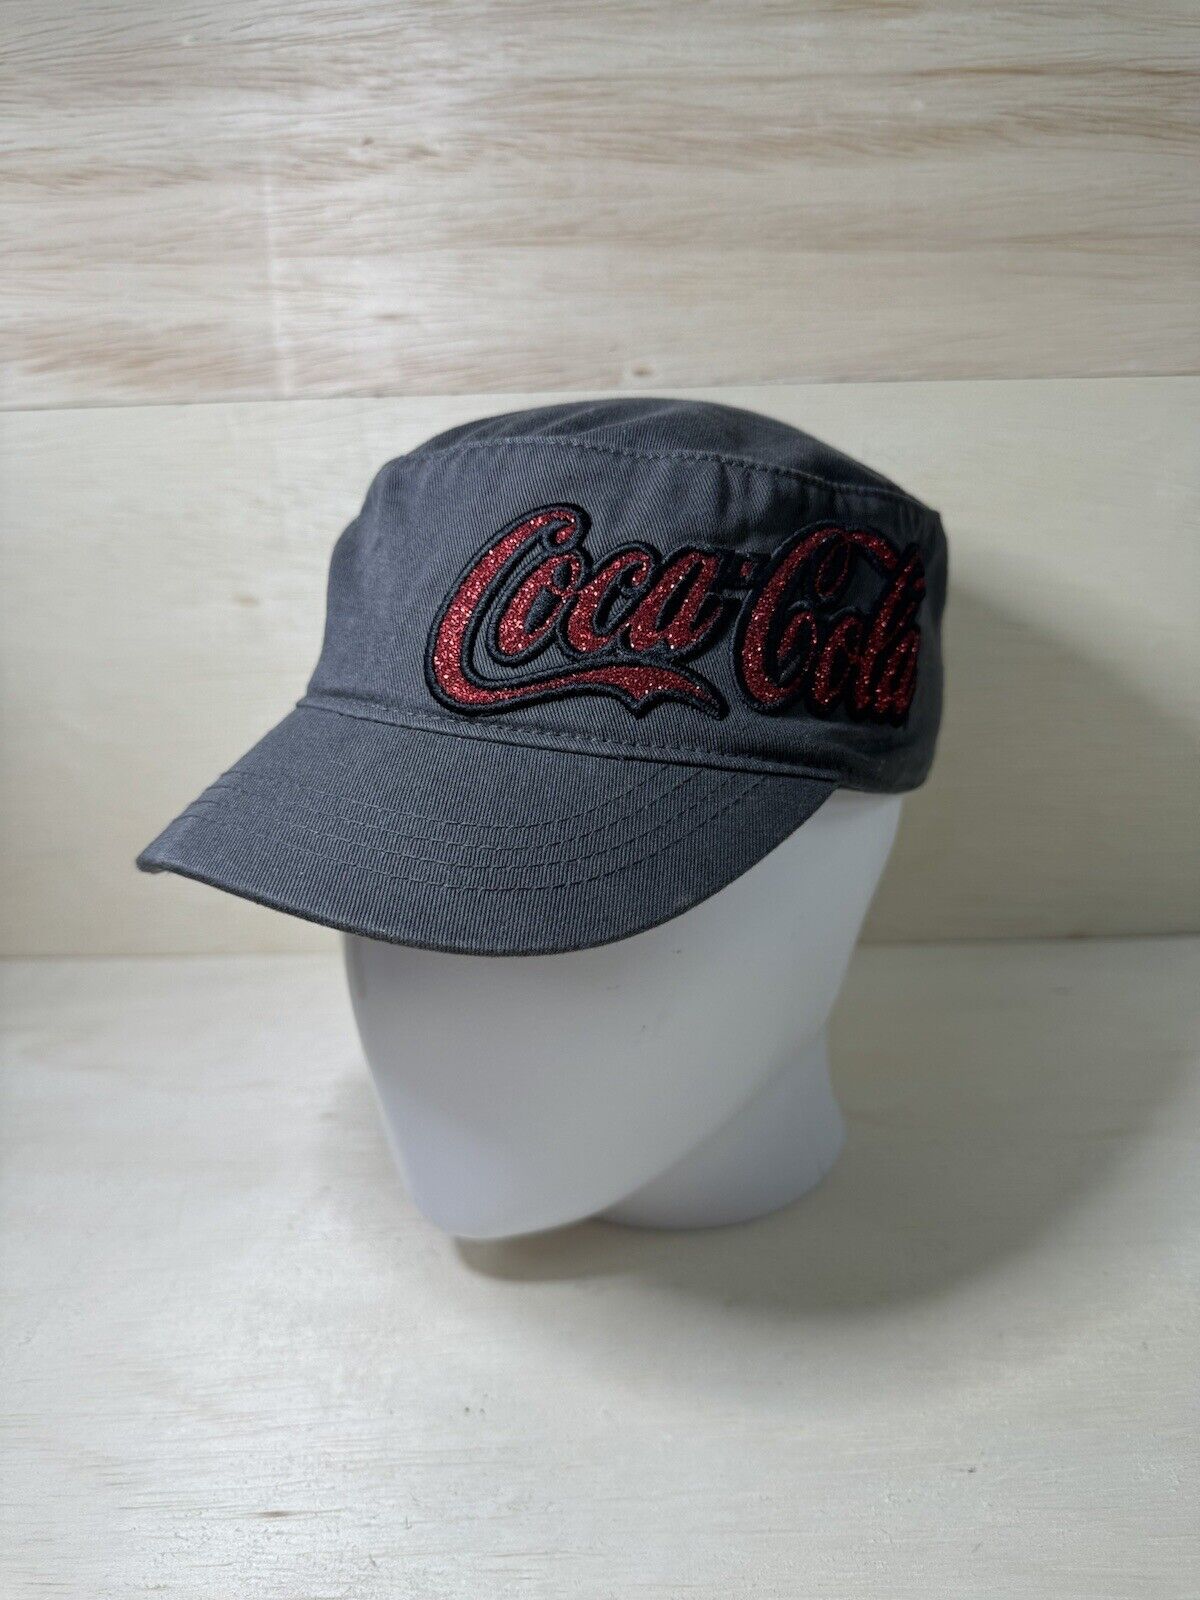 Coca-Cola Coke Hat Cap Cadet Grey Red Adjustable Embroidered Sparkle Logo OEM